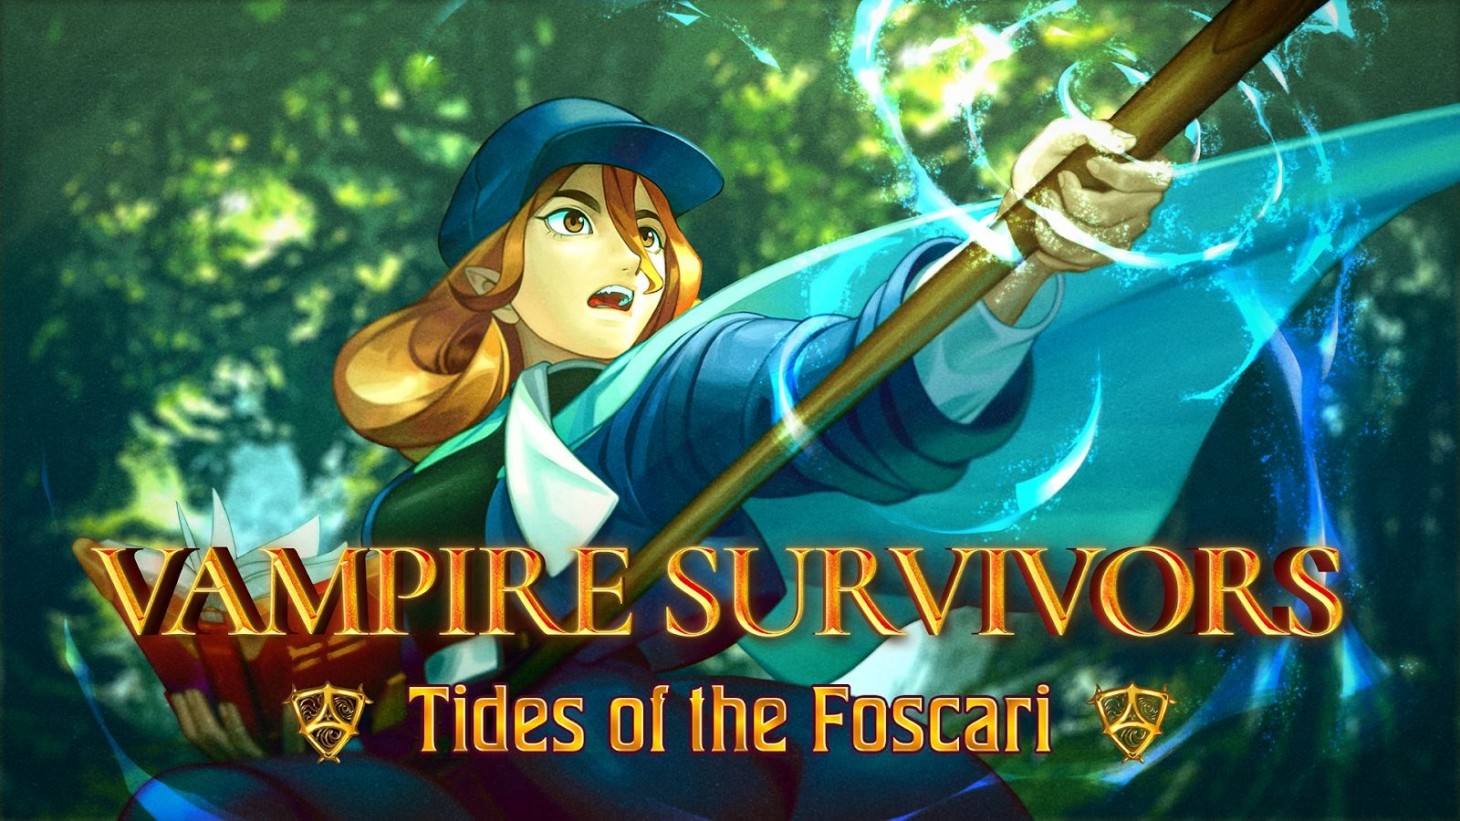 Vampire Survivors otrzyma nowy expansion pack Tides of the Foscari, który będzie kosztował 2$.